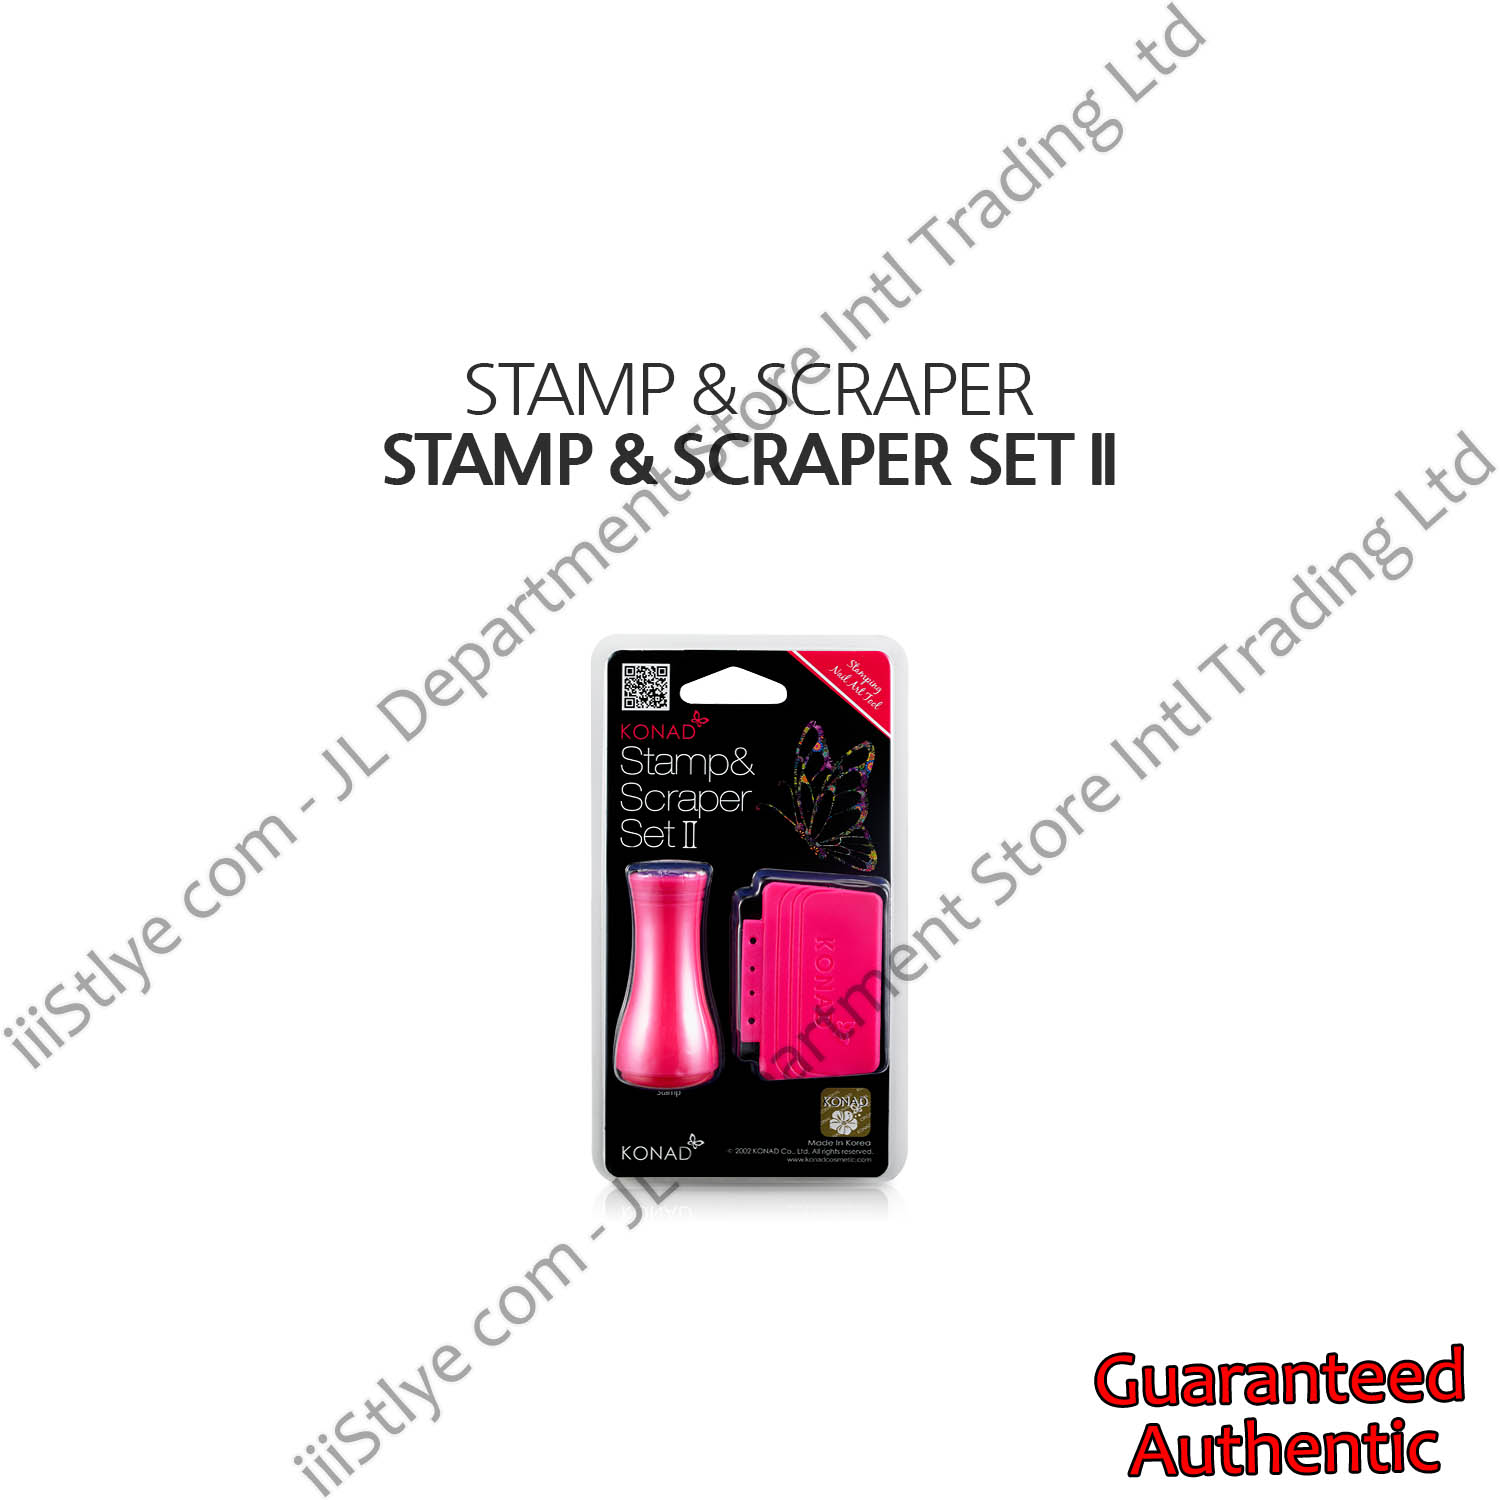 stamp & scraper set II